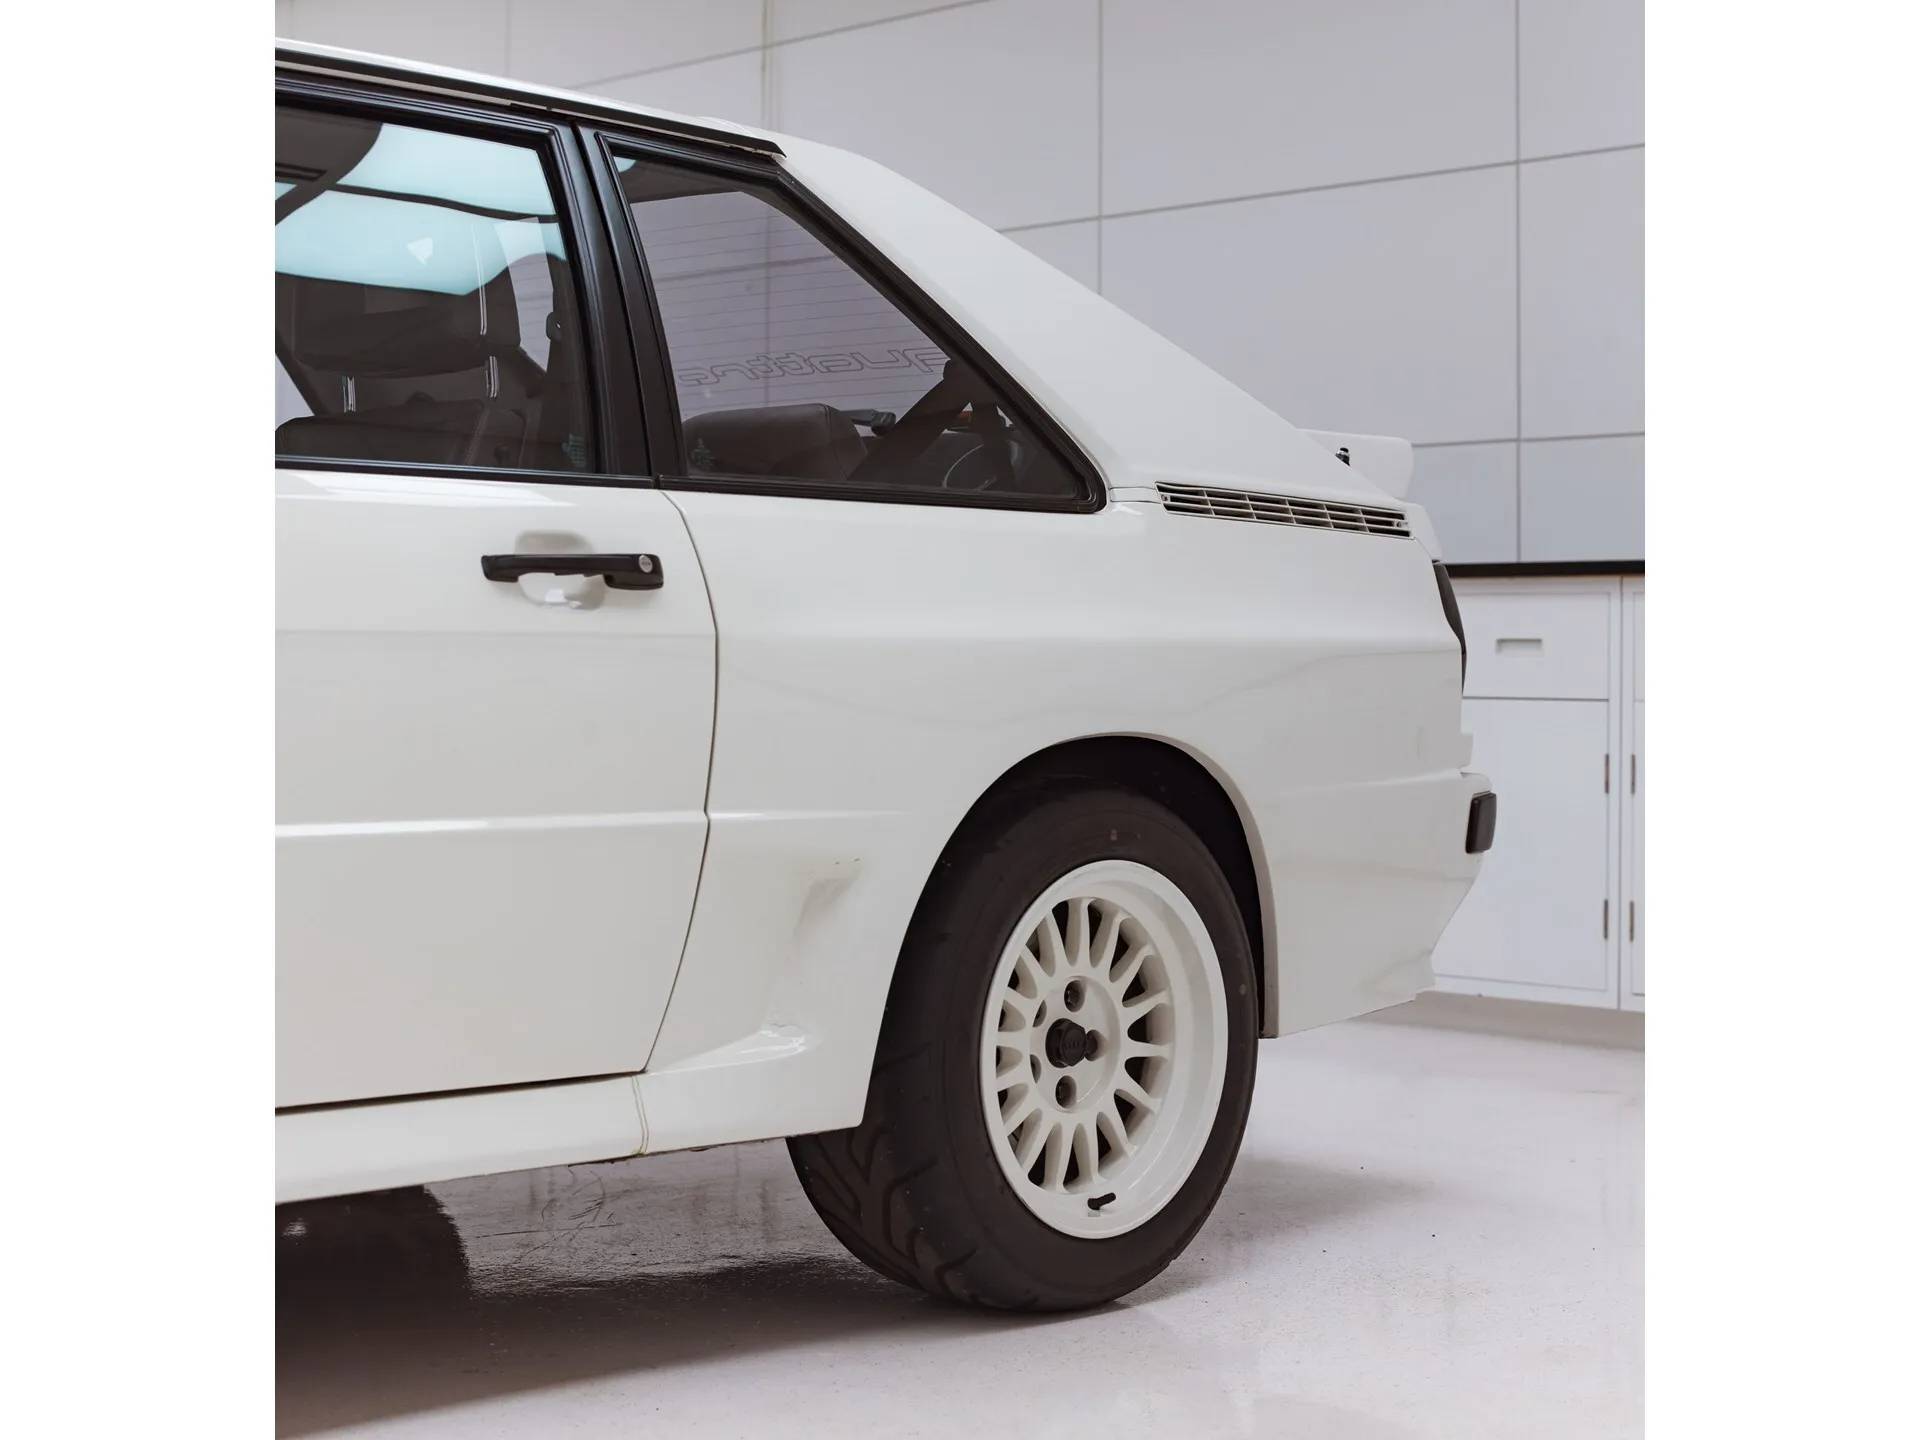 Audi Sport Quattro (1984): Kurzer für 0,5 Millionen Euro